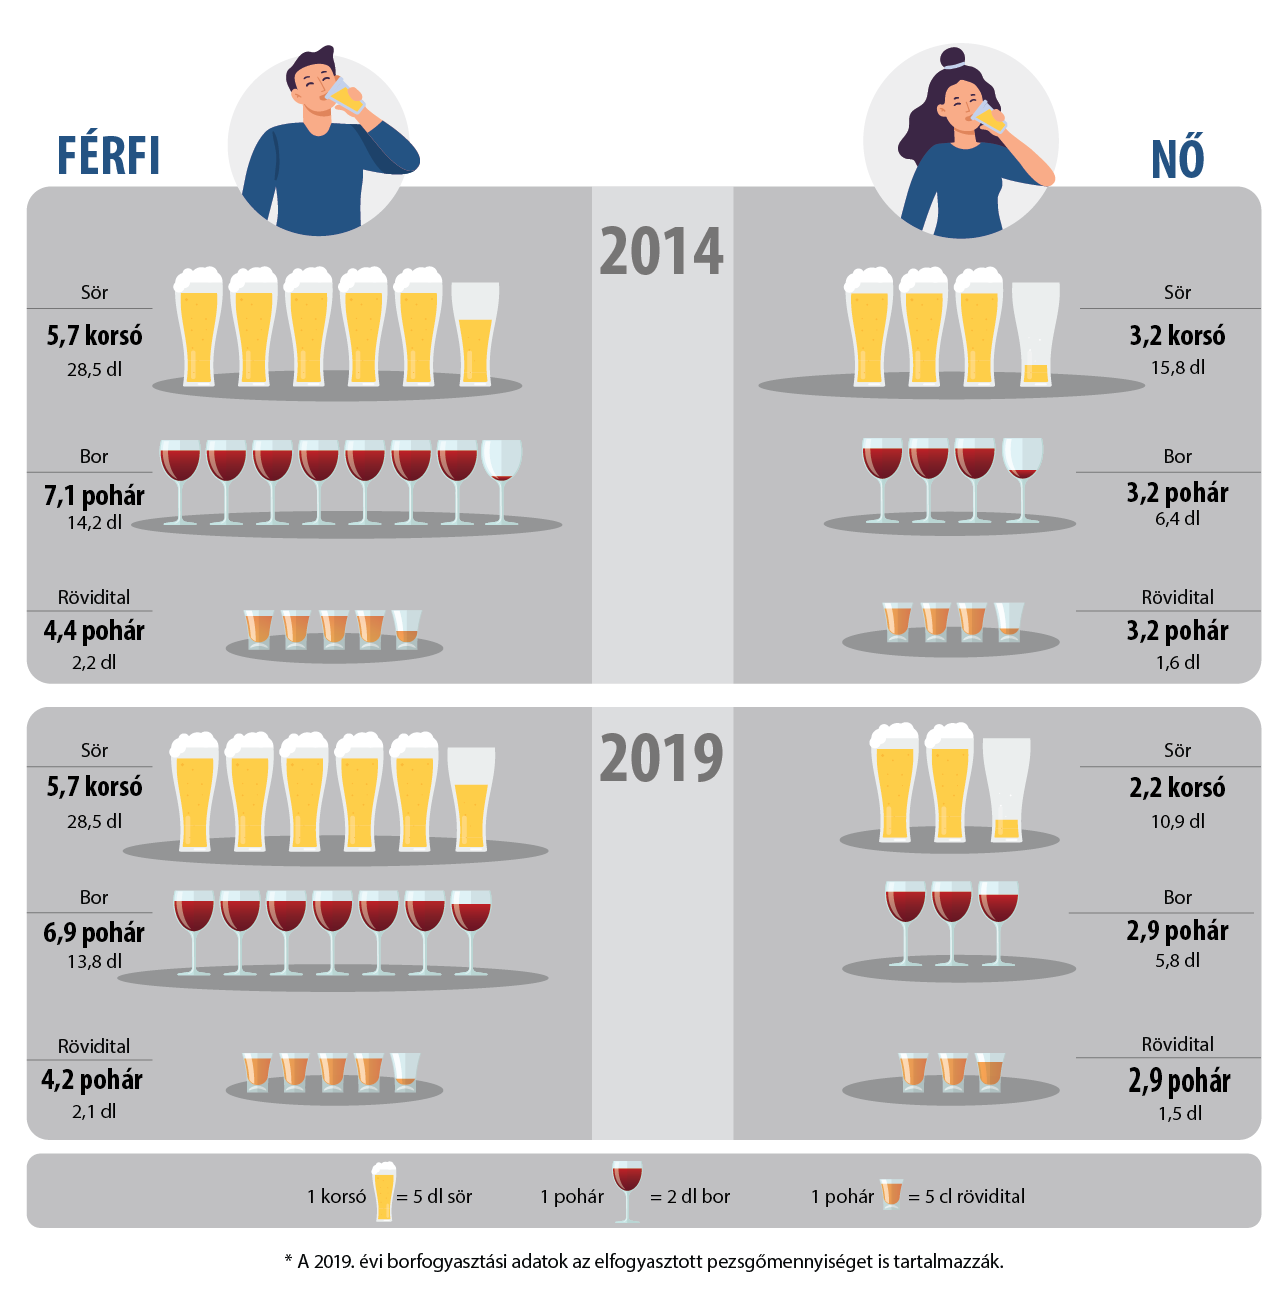 A heti átlagos alkoholfogyasztás alkoholfajták szerint nemenként a hetente legalább egyszer, az adott alkoholfajtát fogyasztók körében, 2019*